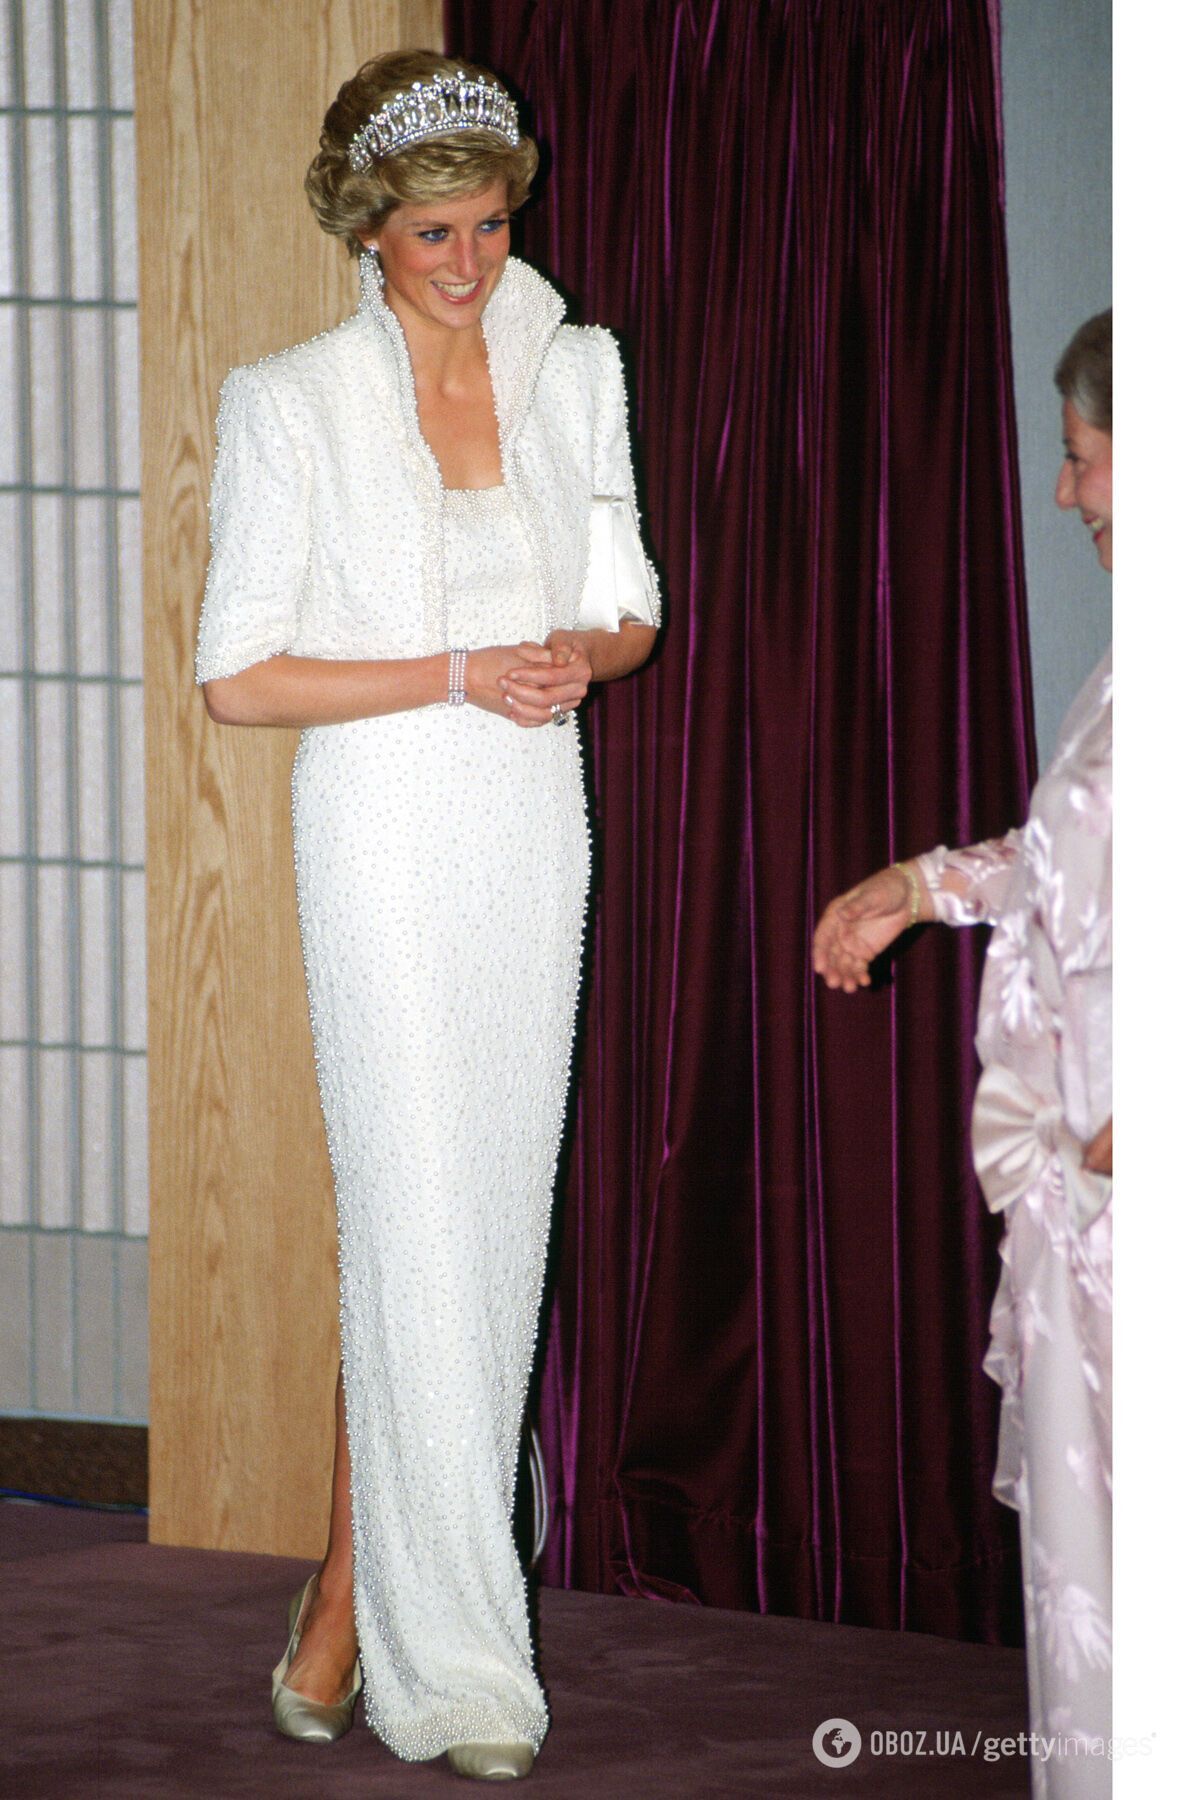 Образ Кейт Миддлтон сравнили с нарядом принцессы Дианы 1989 года: на них одинаковые украшения и похожие платья